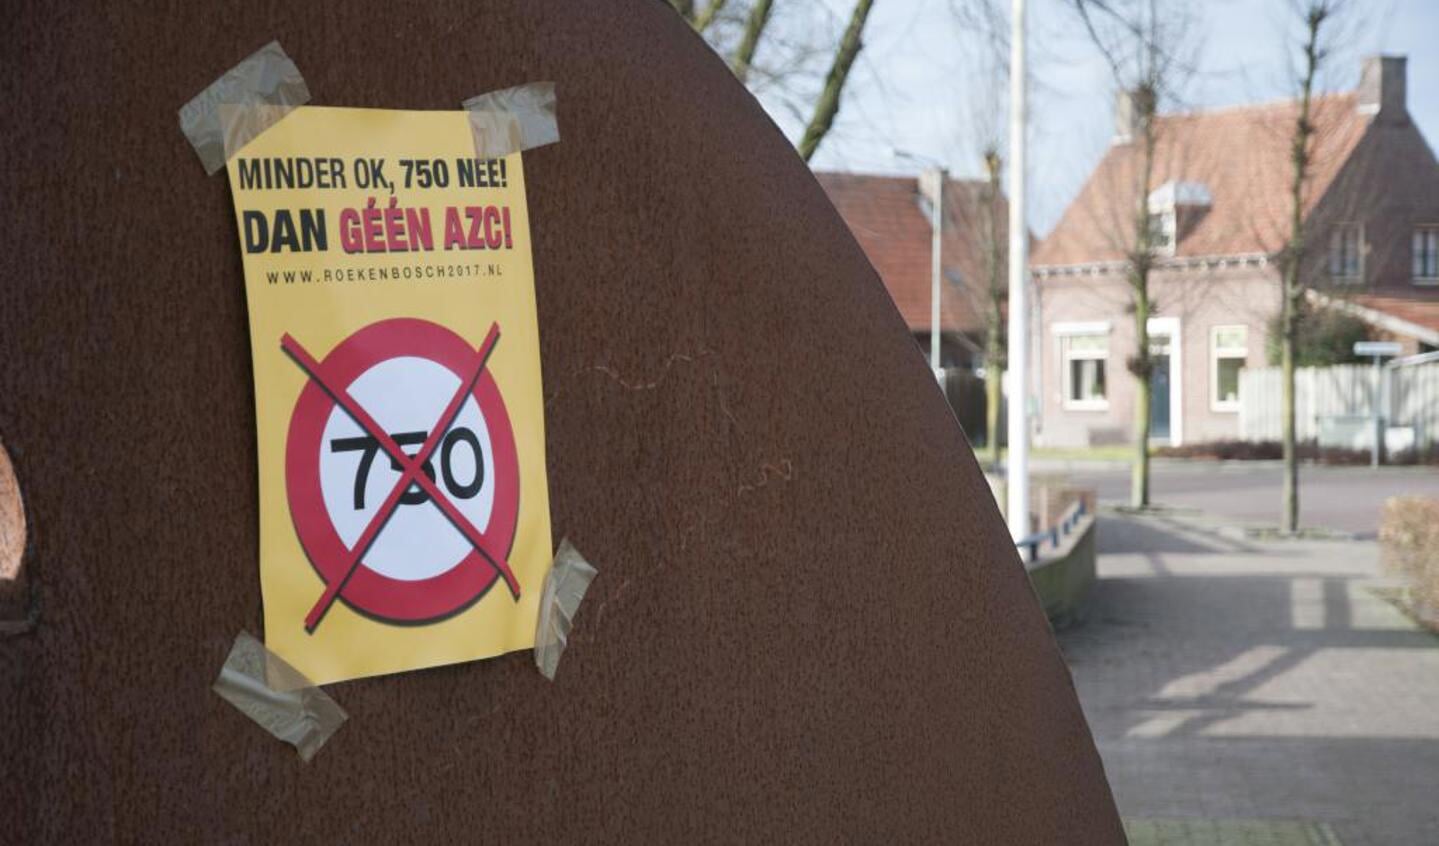 66 procent van de inwoners van Blitterswijck is voor een azc met minder asielzoekers of voor een kortere periode. Foto: Lotte Kamphuis